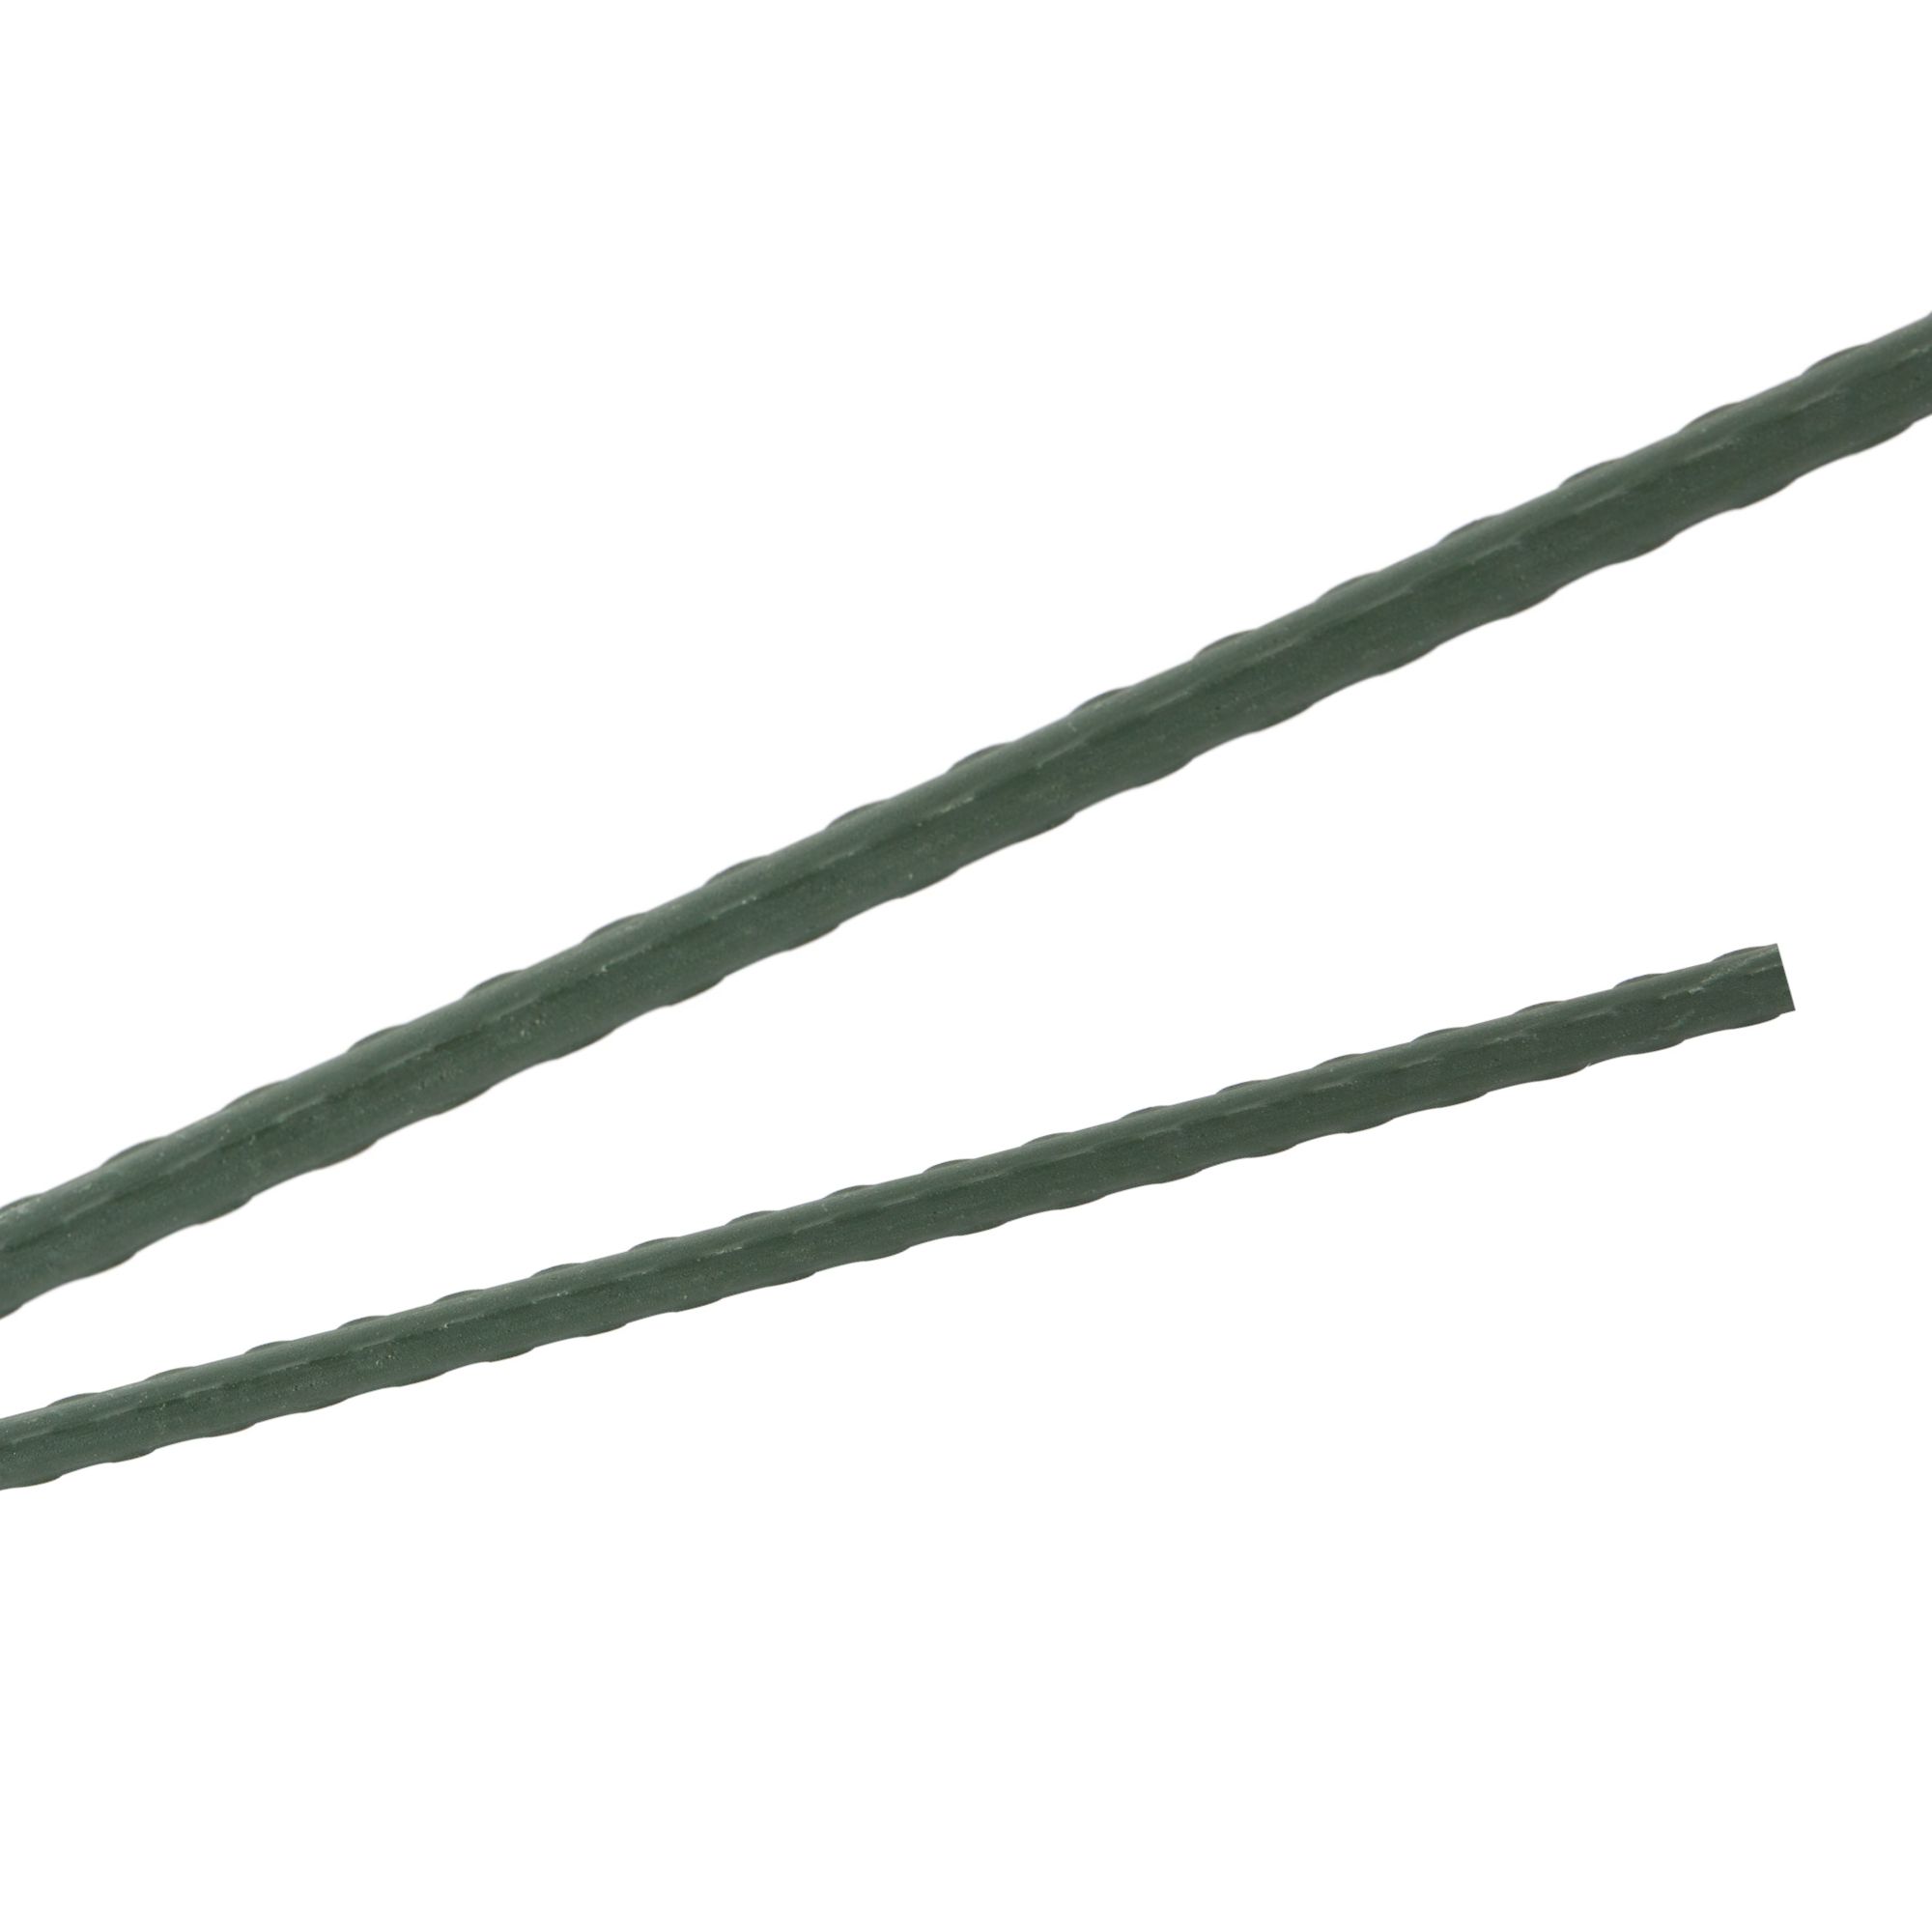 Tyč podpěrná, 20mm, 150cm, kov+PVC, zelená 0.280000 Kg GIGA Sklad20 211769 84